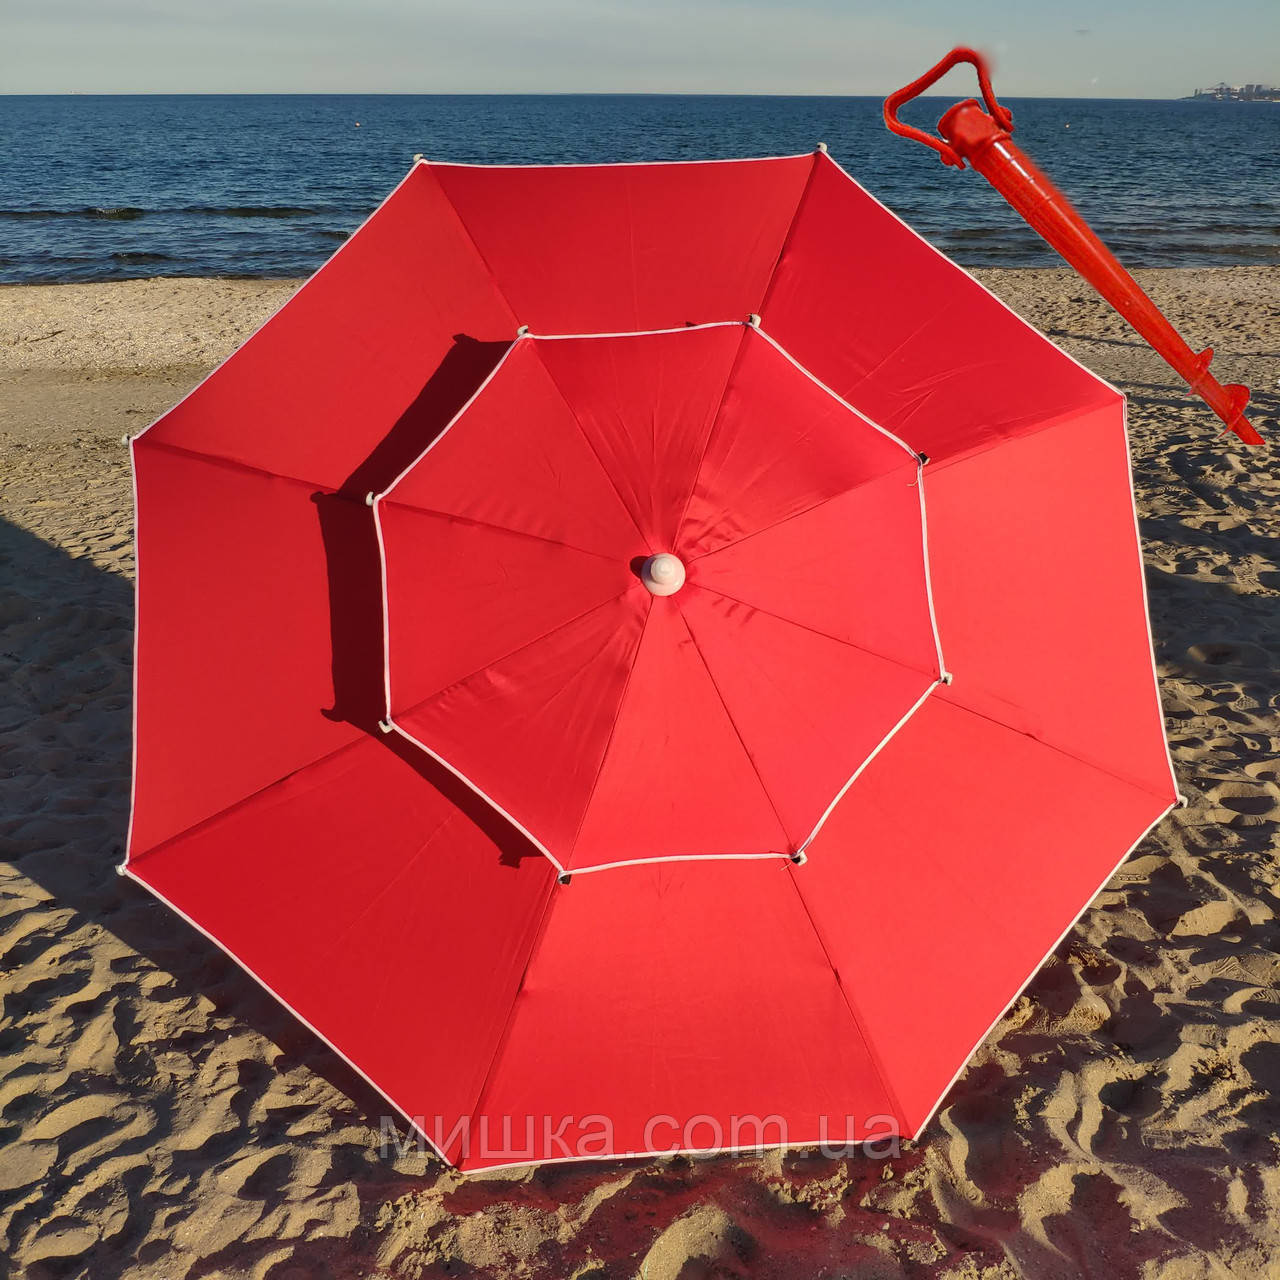 Пляжна міцна парасолька 2.3 м, повітряний клапан, чохол, трубка 32 мм, 8 спиць + БУР у подарунок! Червона